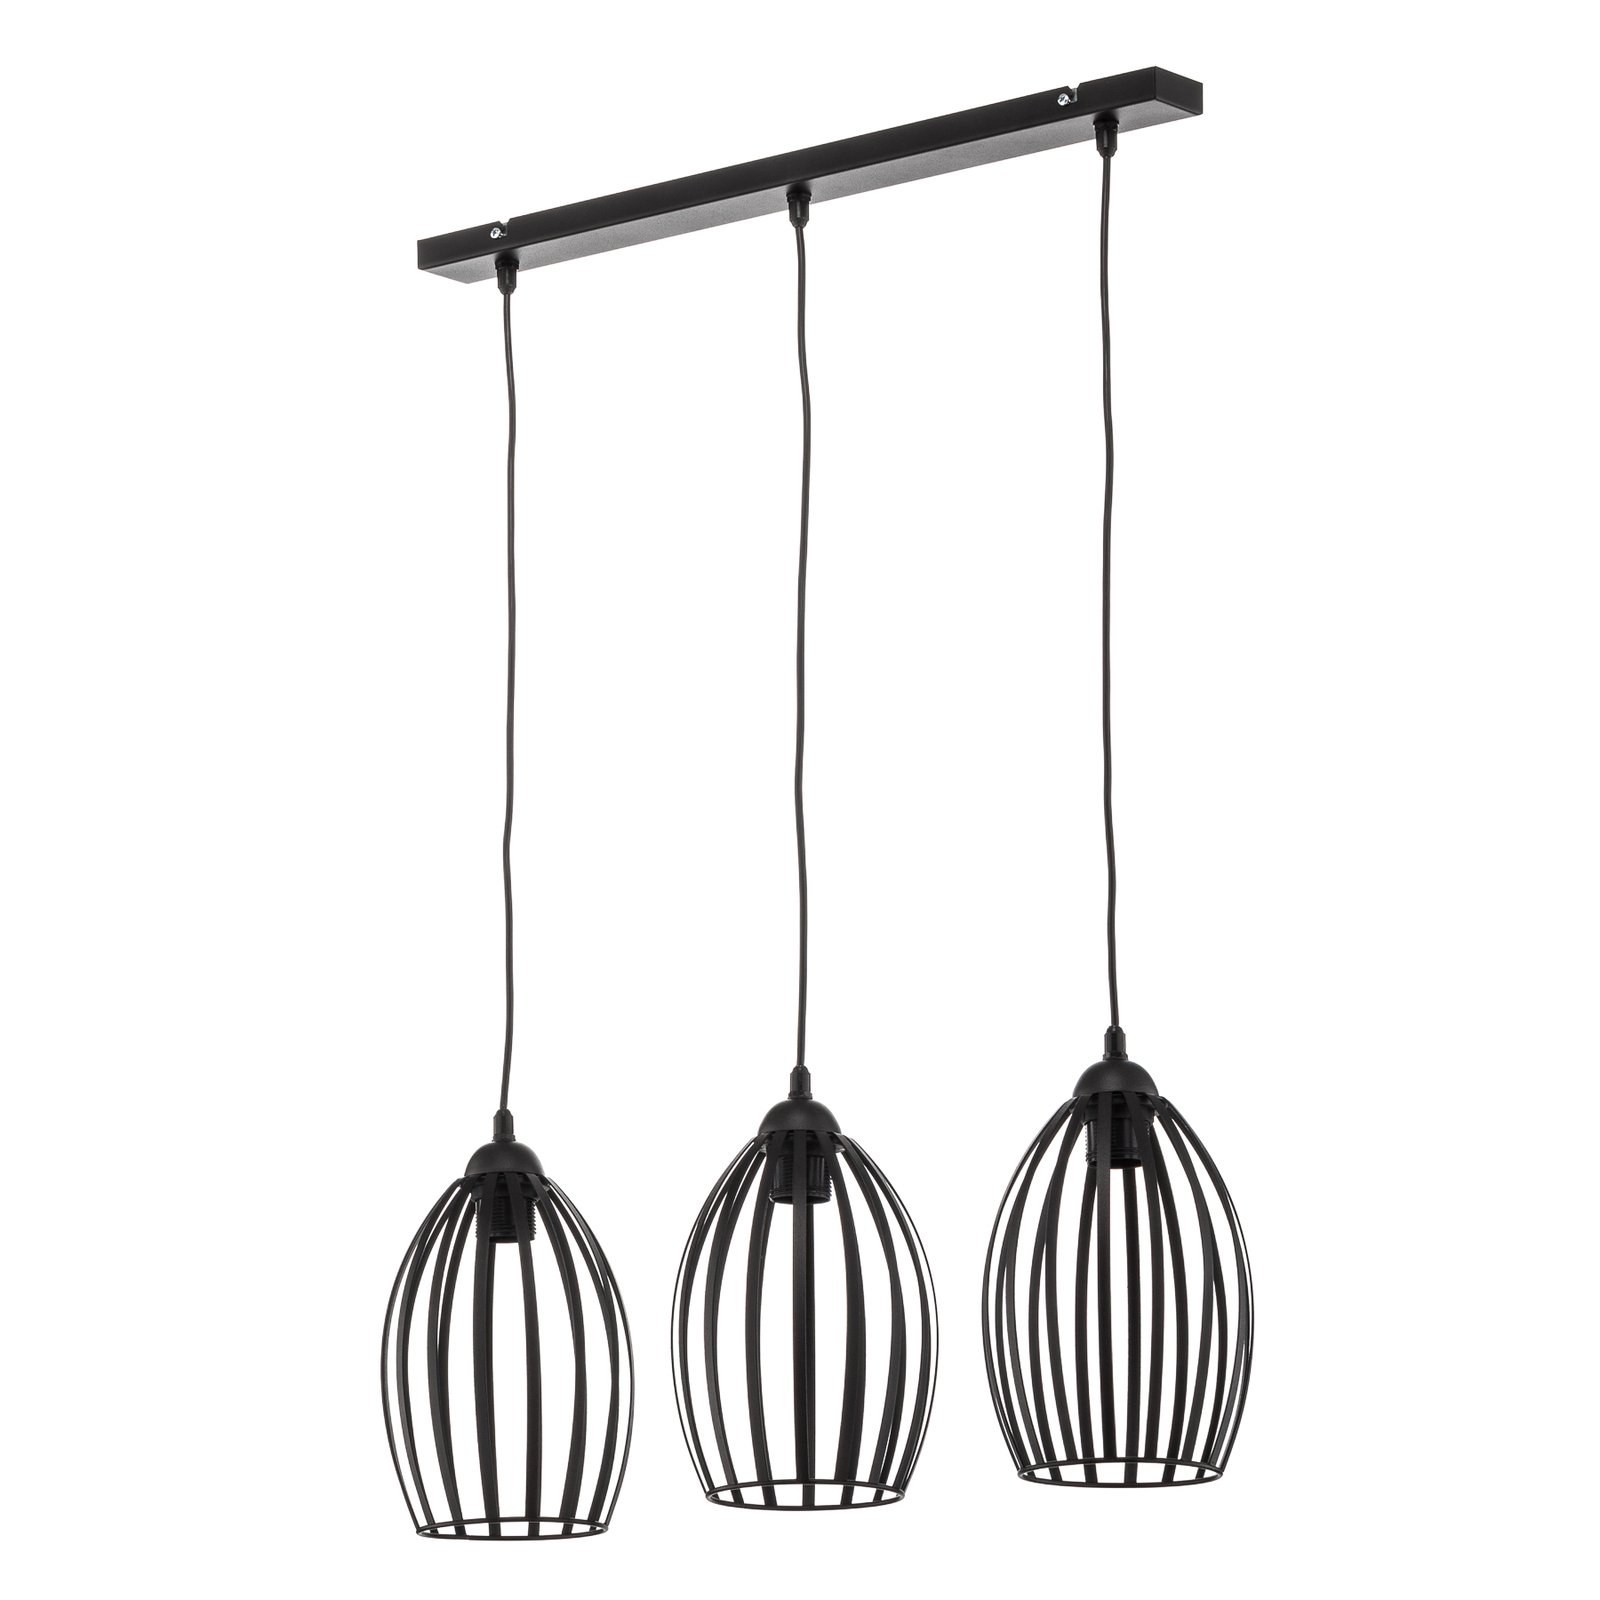 Dali hanglamp in zwart, 3-lamps lang